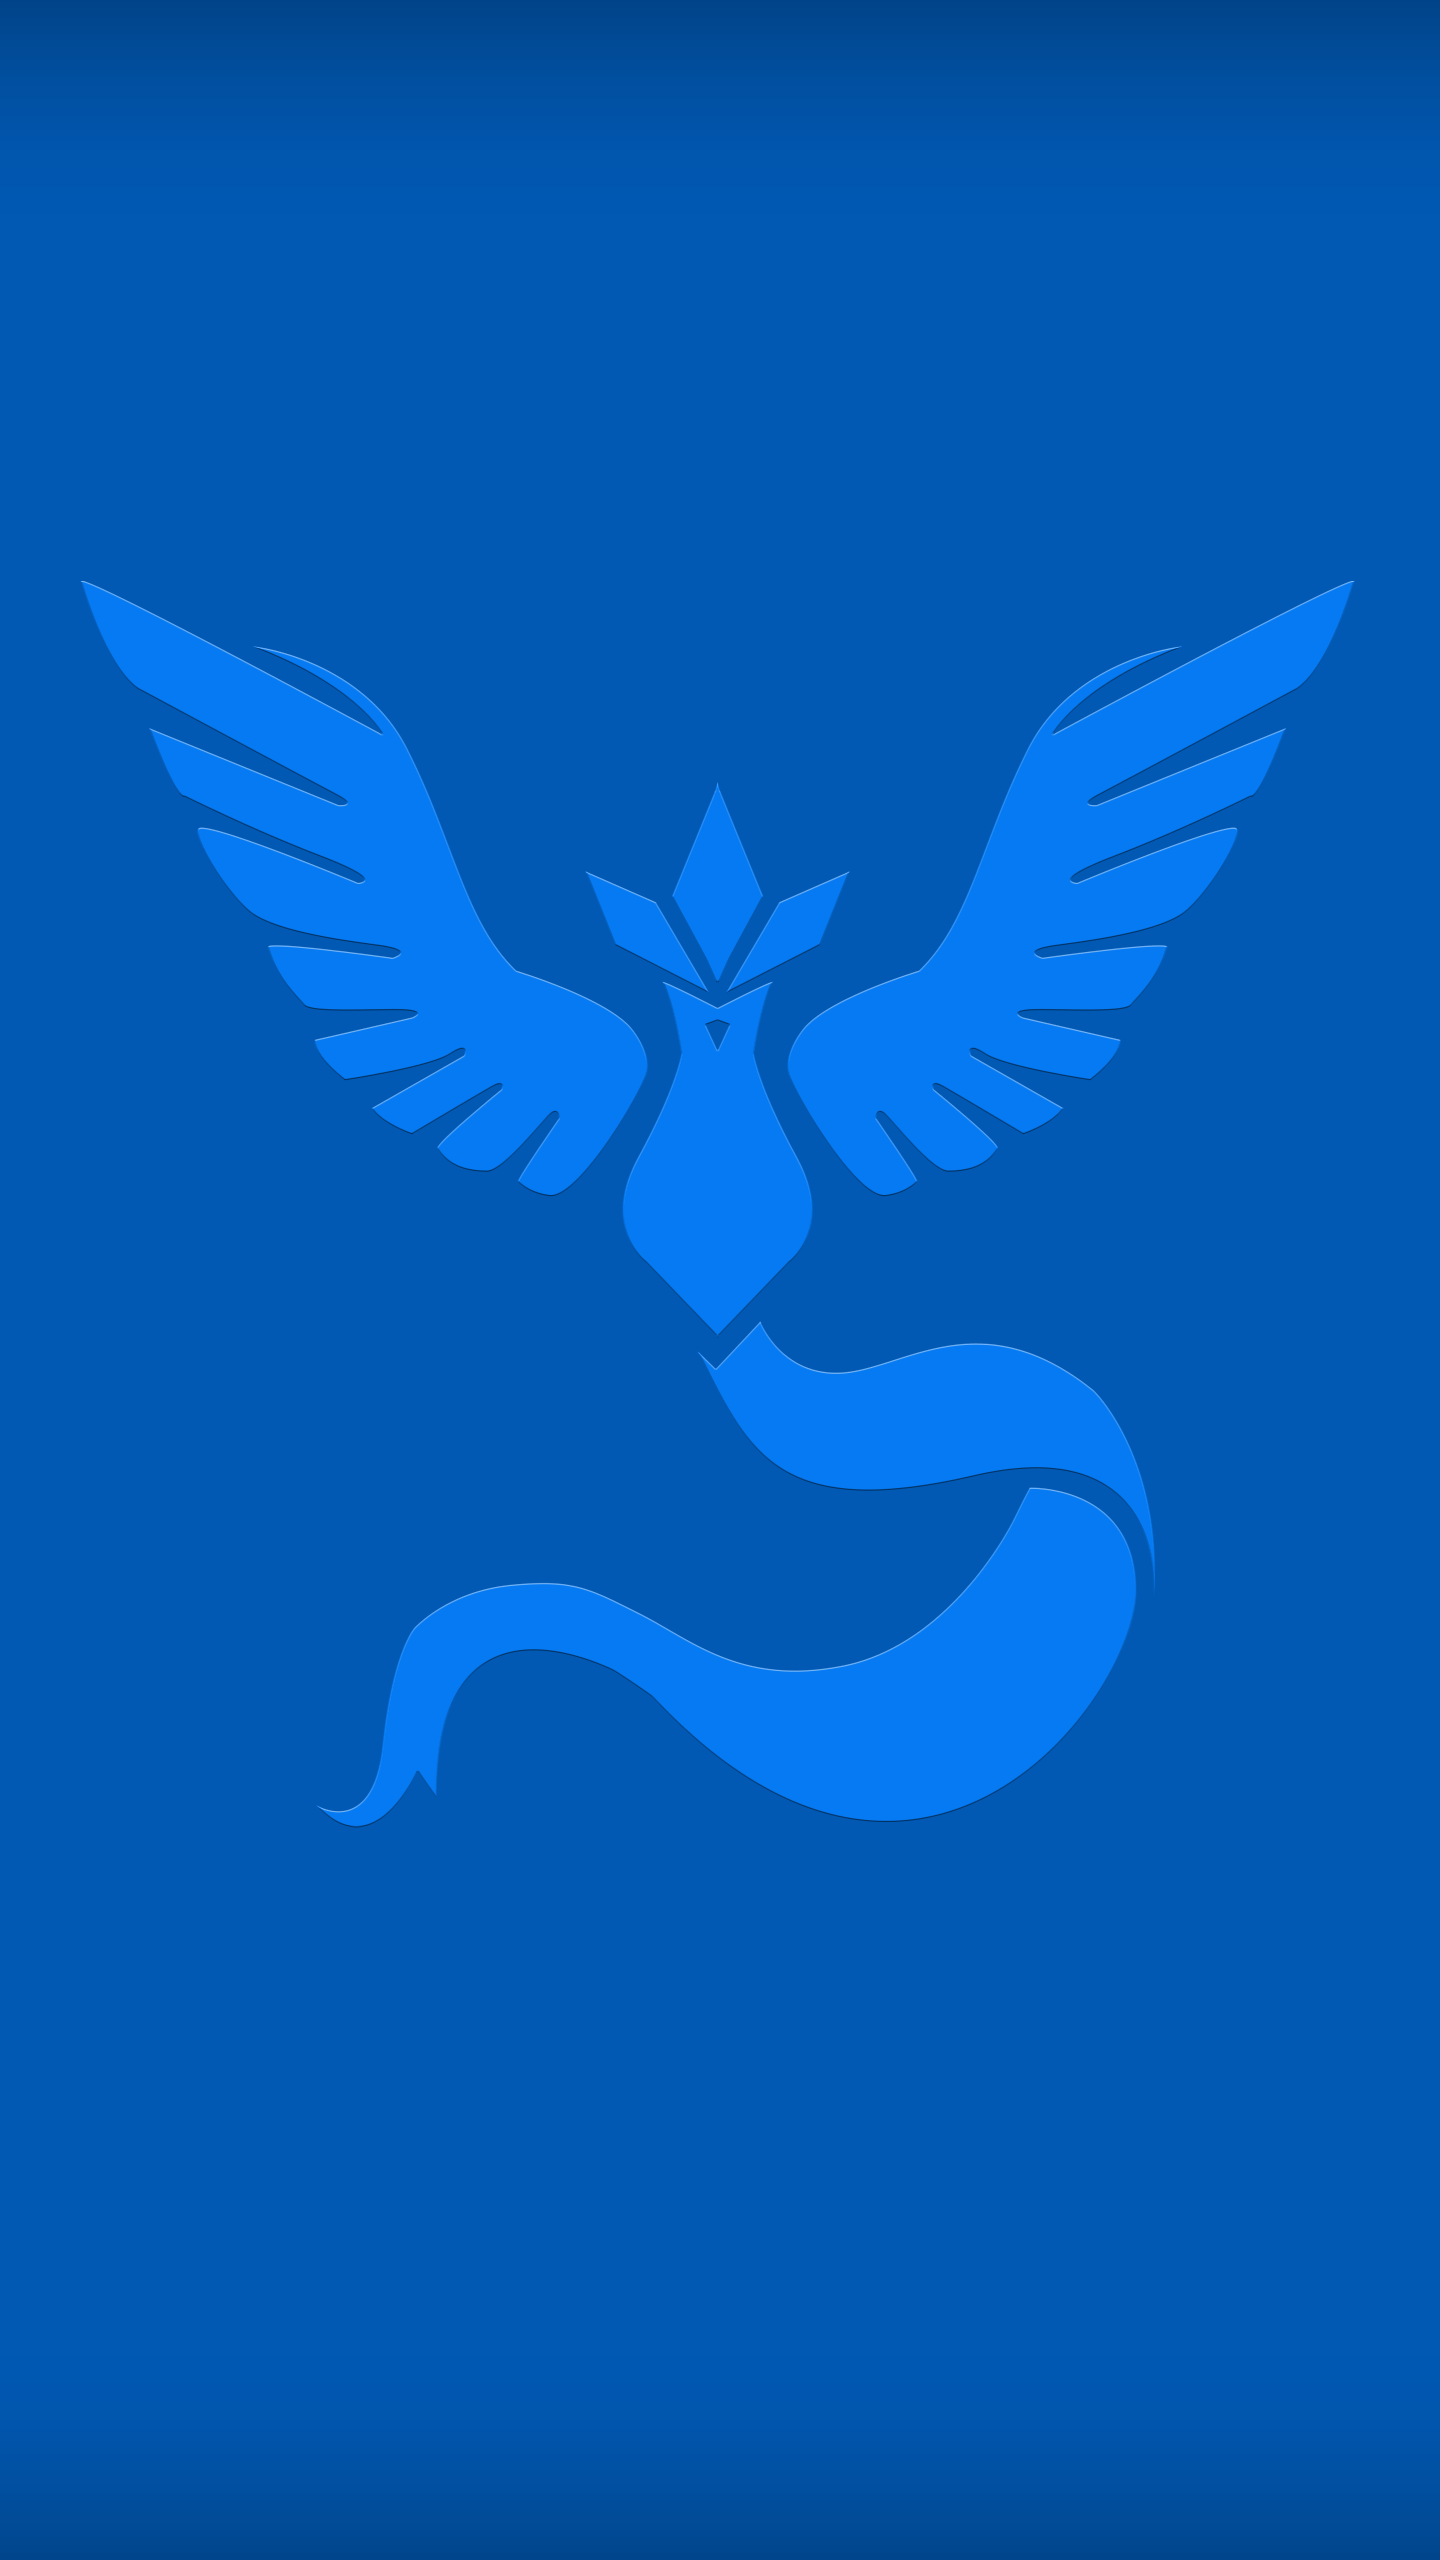 チームミスティックライブ壁紙,青い,コバルトブルー,エレクトリックブルー,羽,シンボル